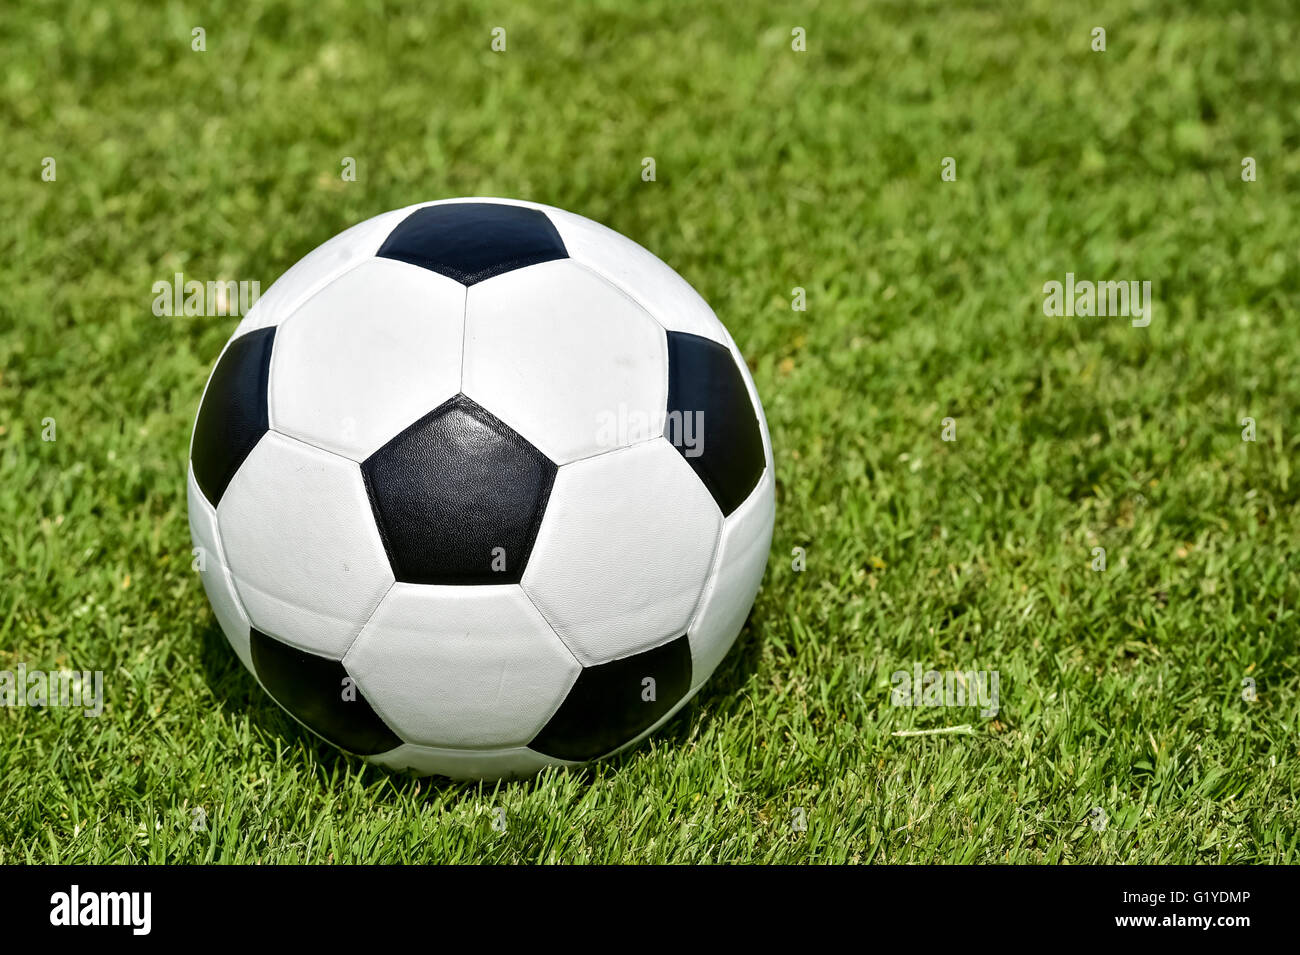 Blanc noir en cuir, soccer ball on lawn Banque D'Images